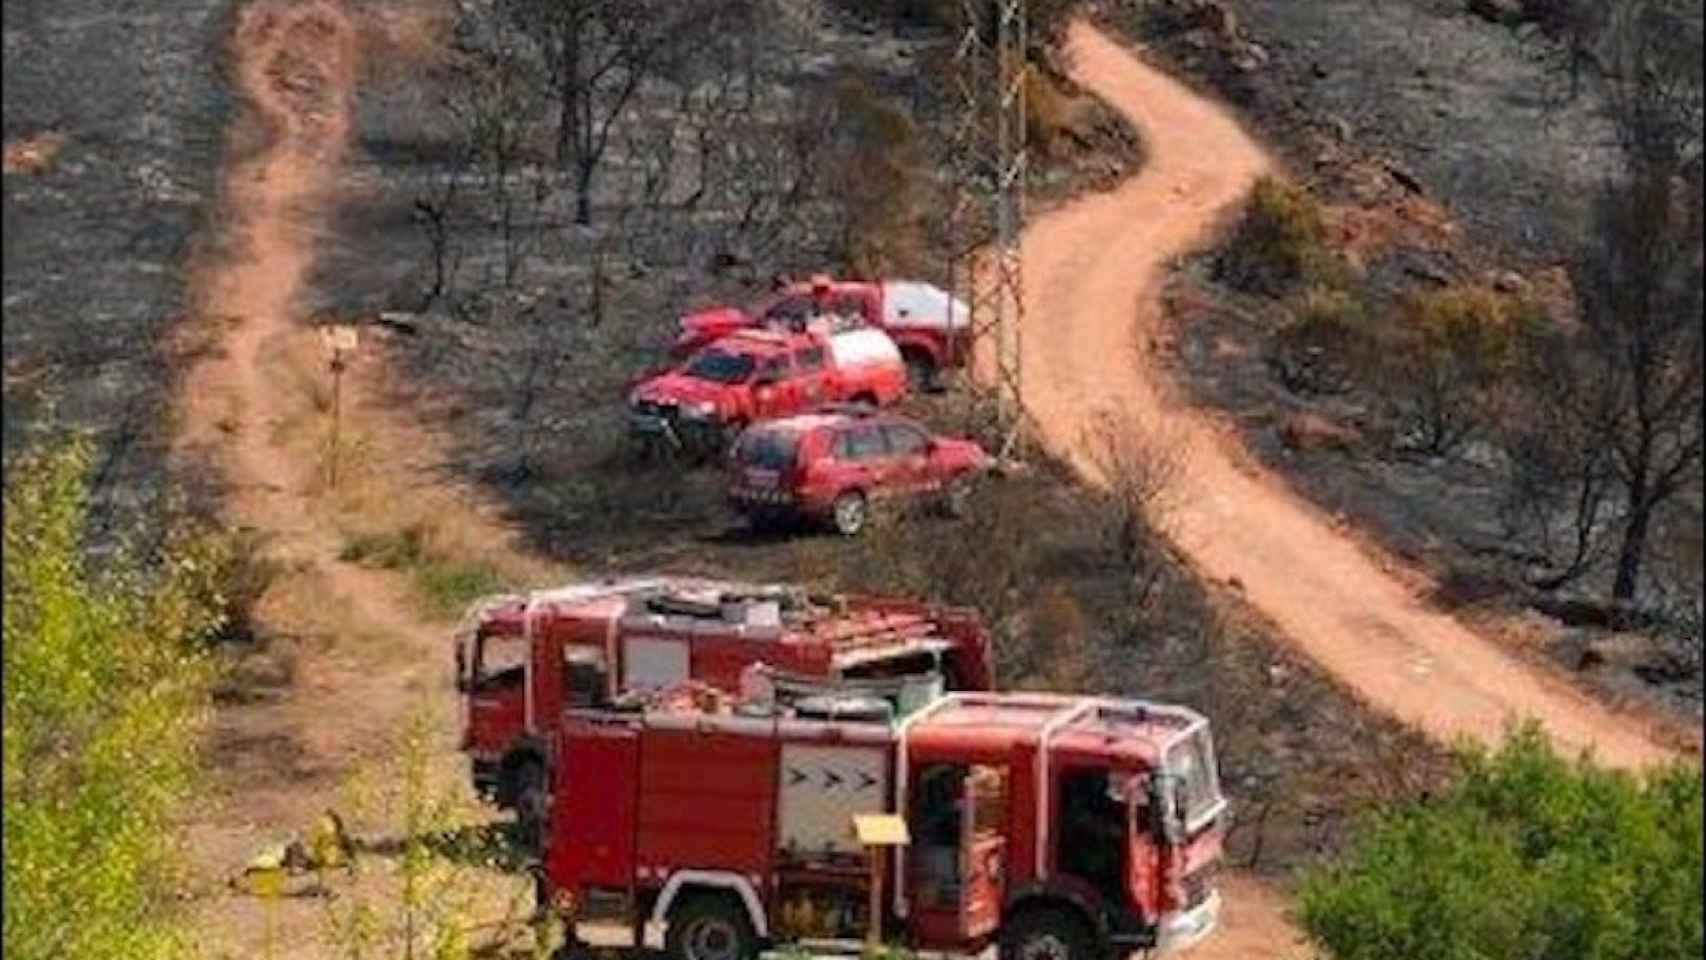 Camiones de bomberos en una zona afectada por un incendio/ BOMBERS